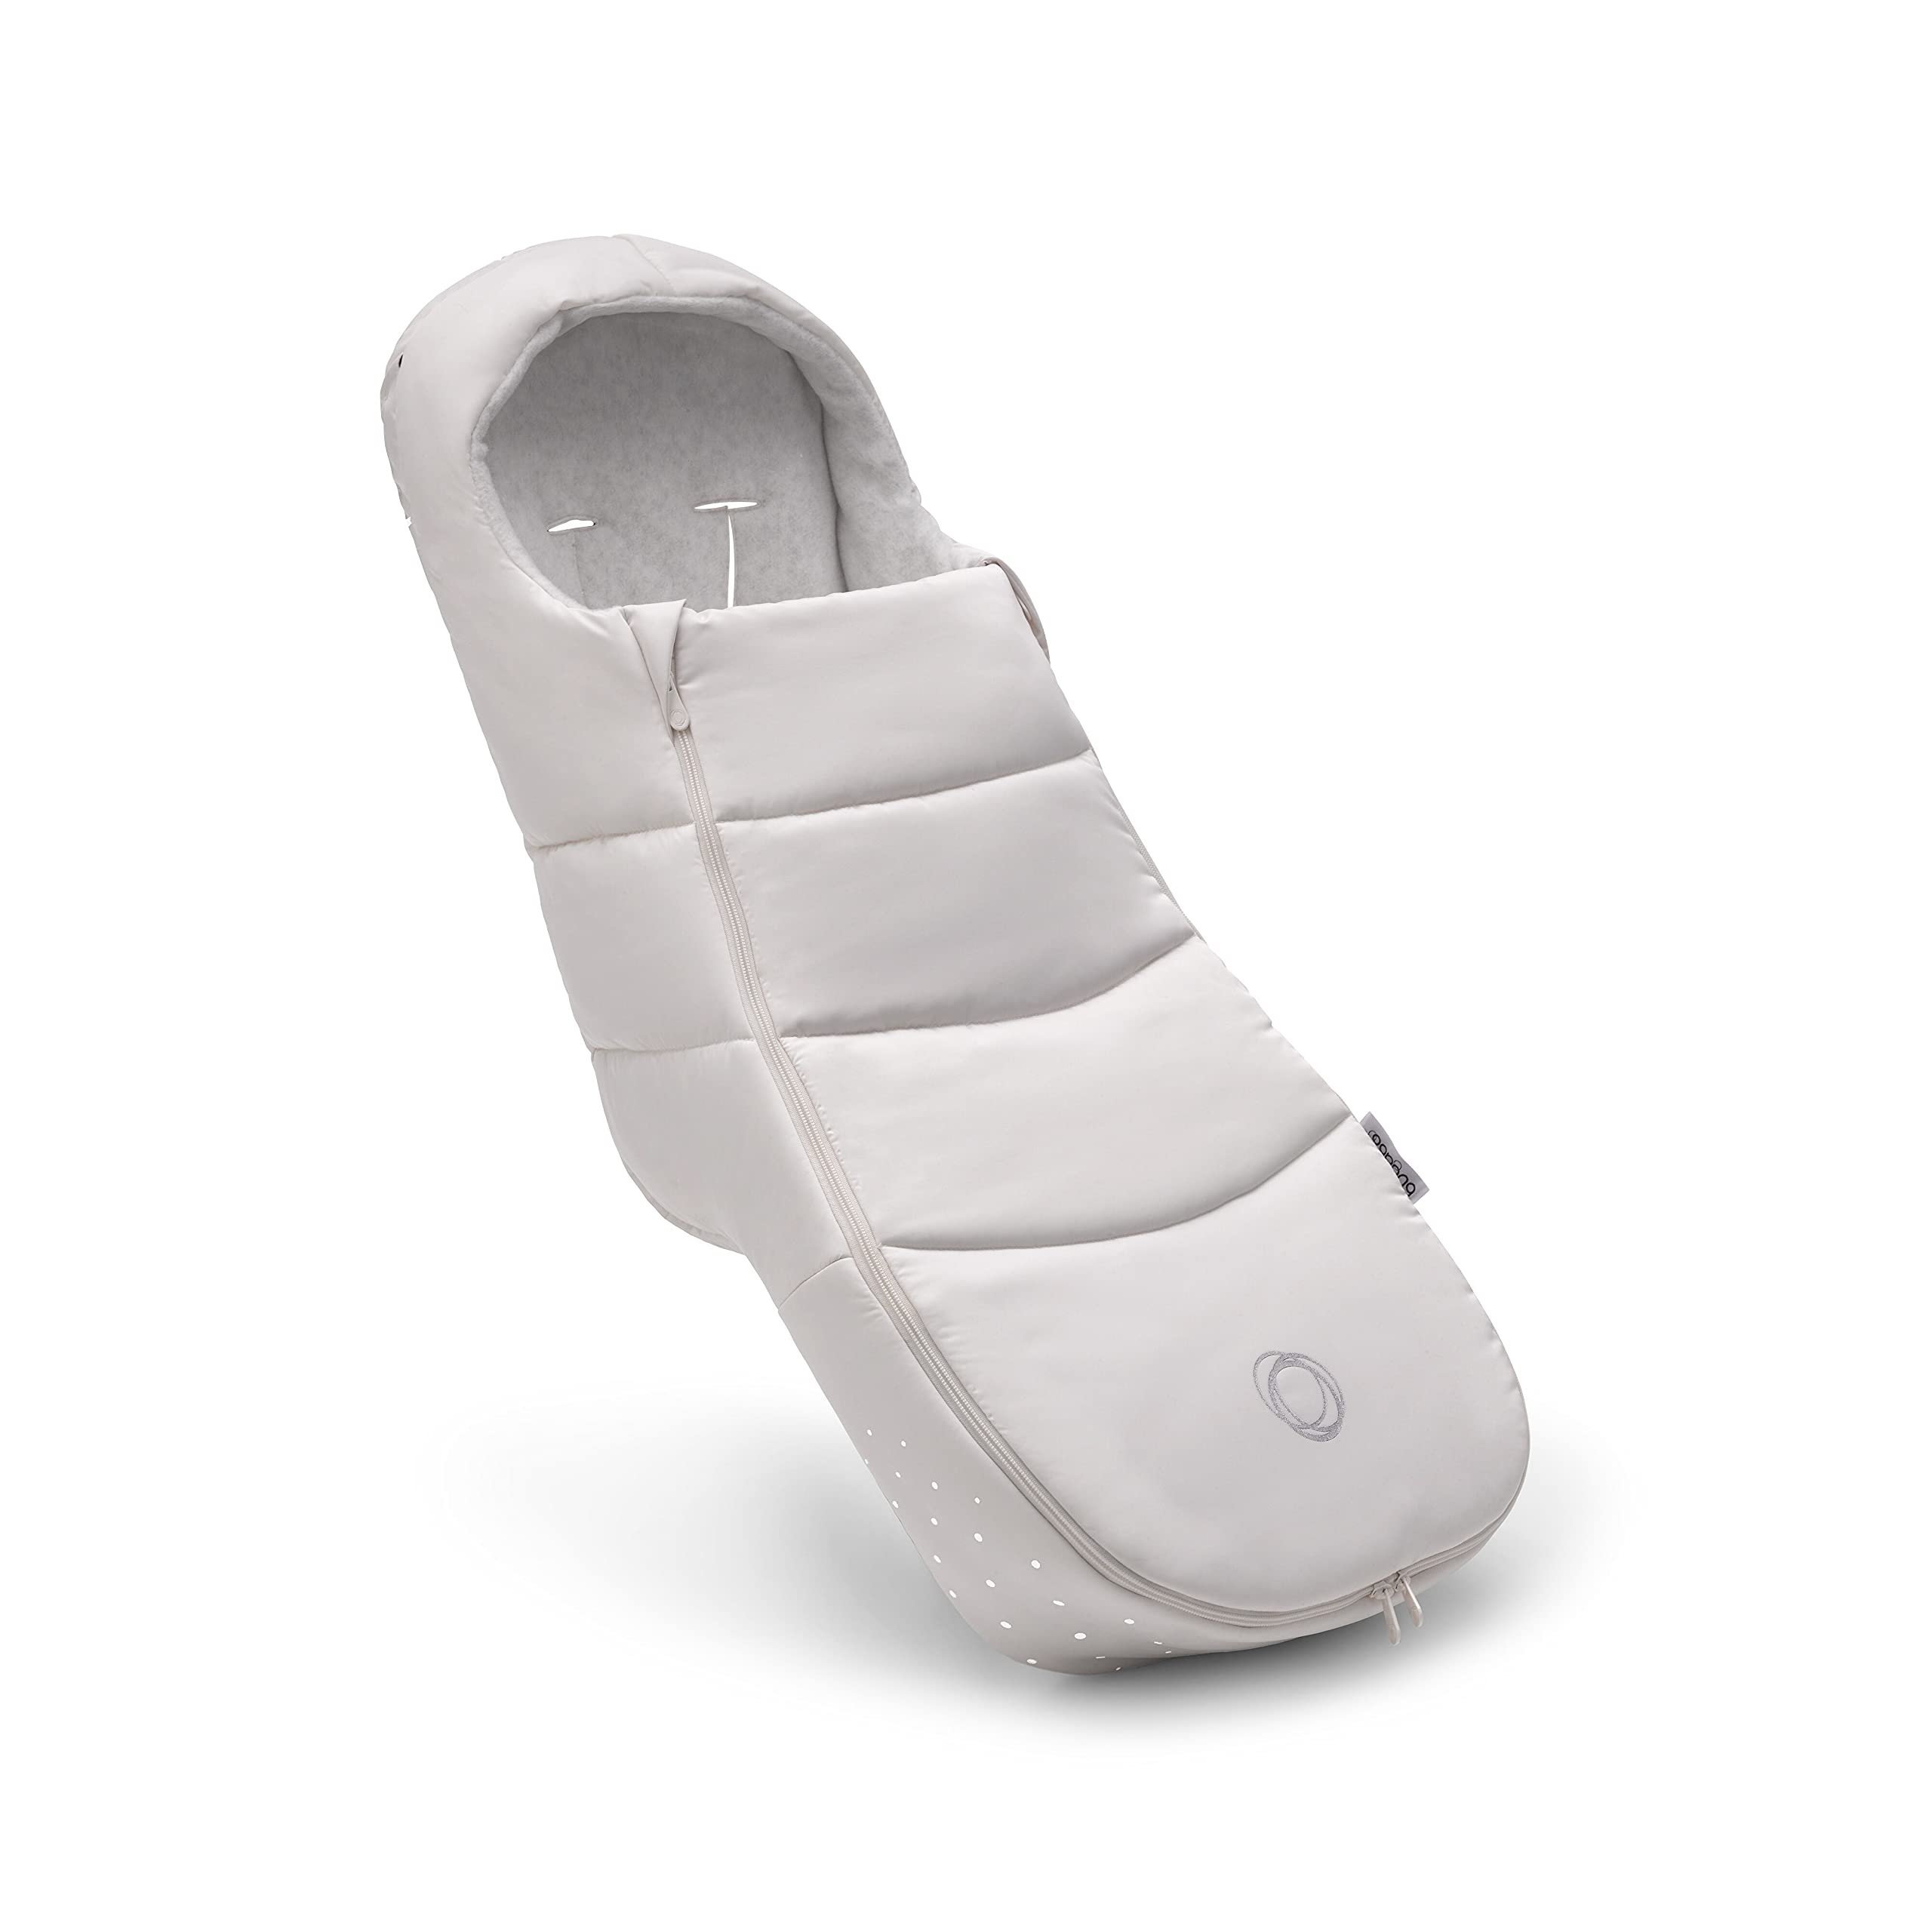 Bugaboo Ganzjahres Fußsack, unverzichtbares Kinderwagen-Zubehör für jede Jahreszeit, wasserdichter und atmungsaktiver Fußwärmer, Weiß